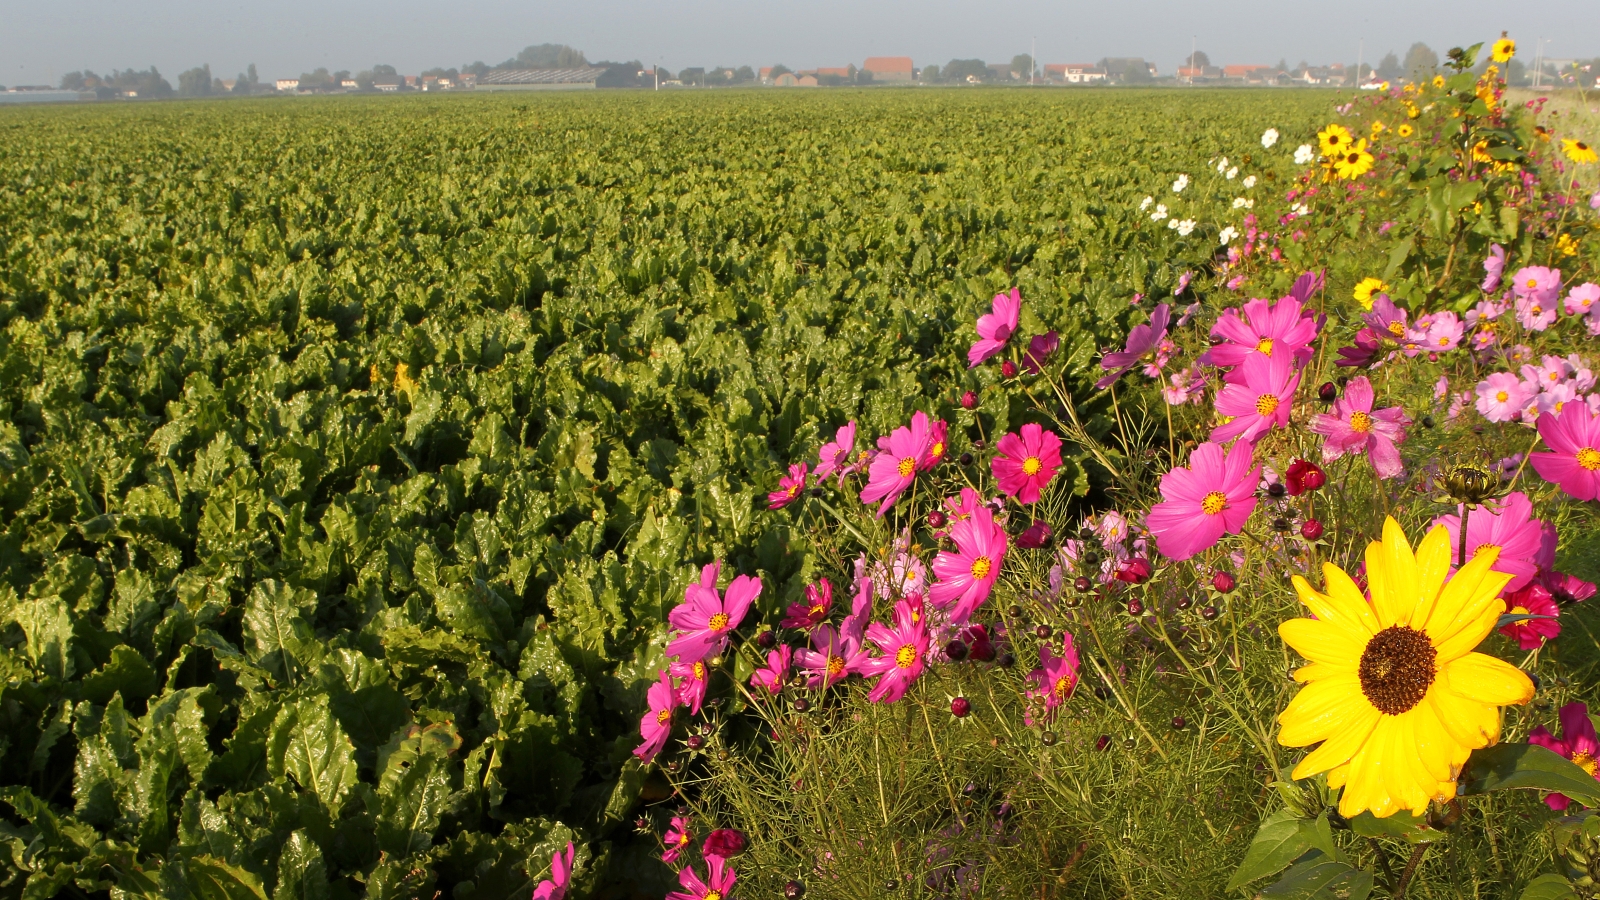 Een groot veld met gewassen, op de achtergrond bebouwing; langs het veld staat een strook met roze en gele veldbloemen